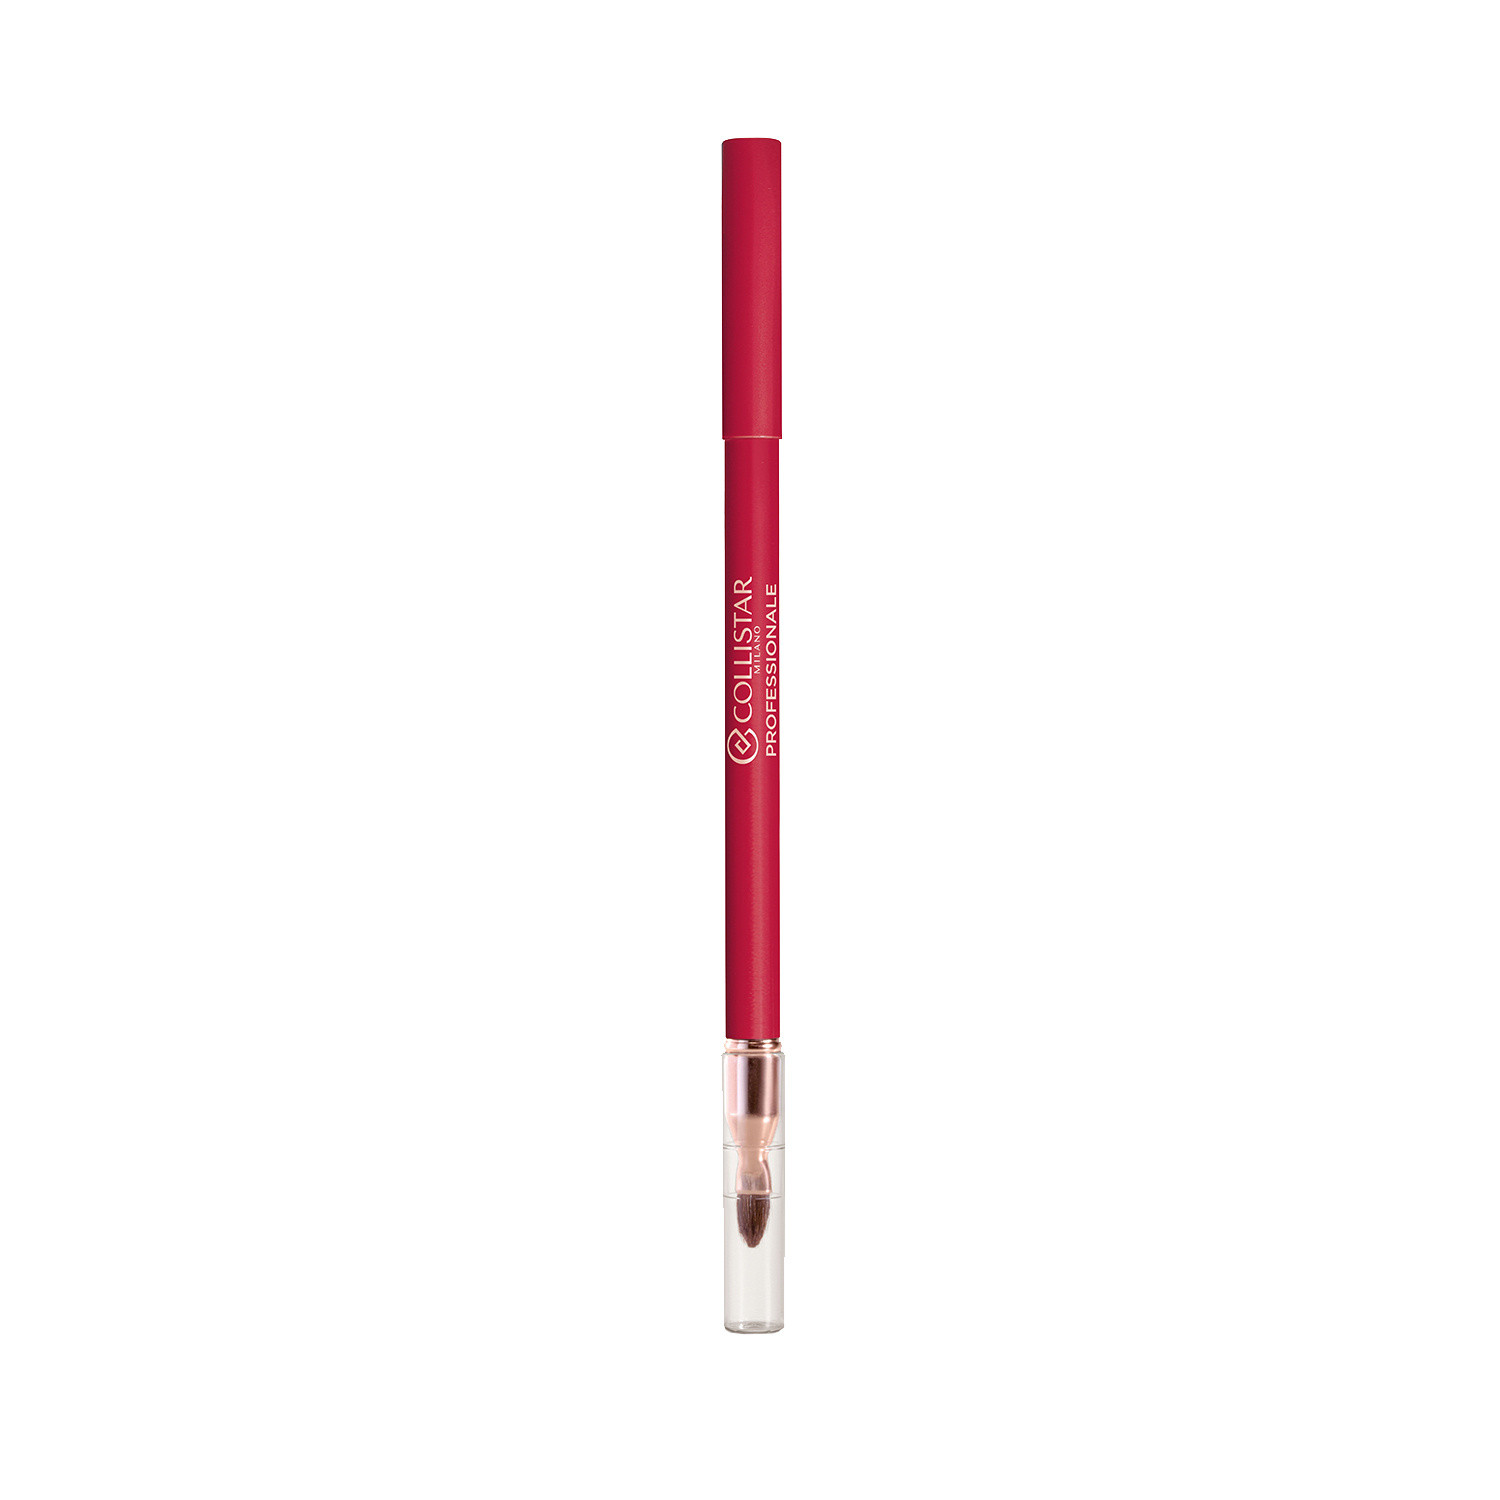 Collistar - Professionale matita labbra lunga durata - 111 Rosso Milano, Rosso fragola, large image number 0